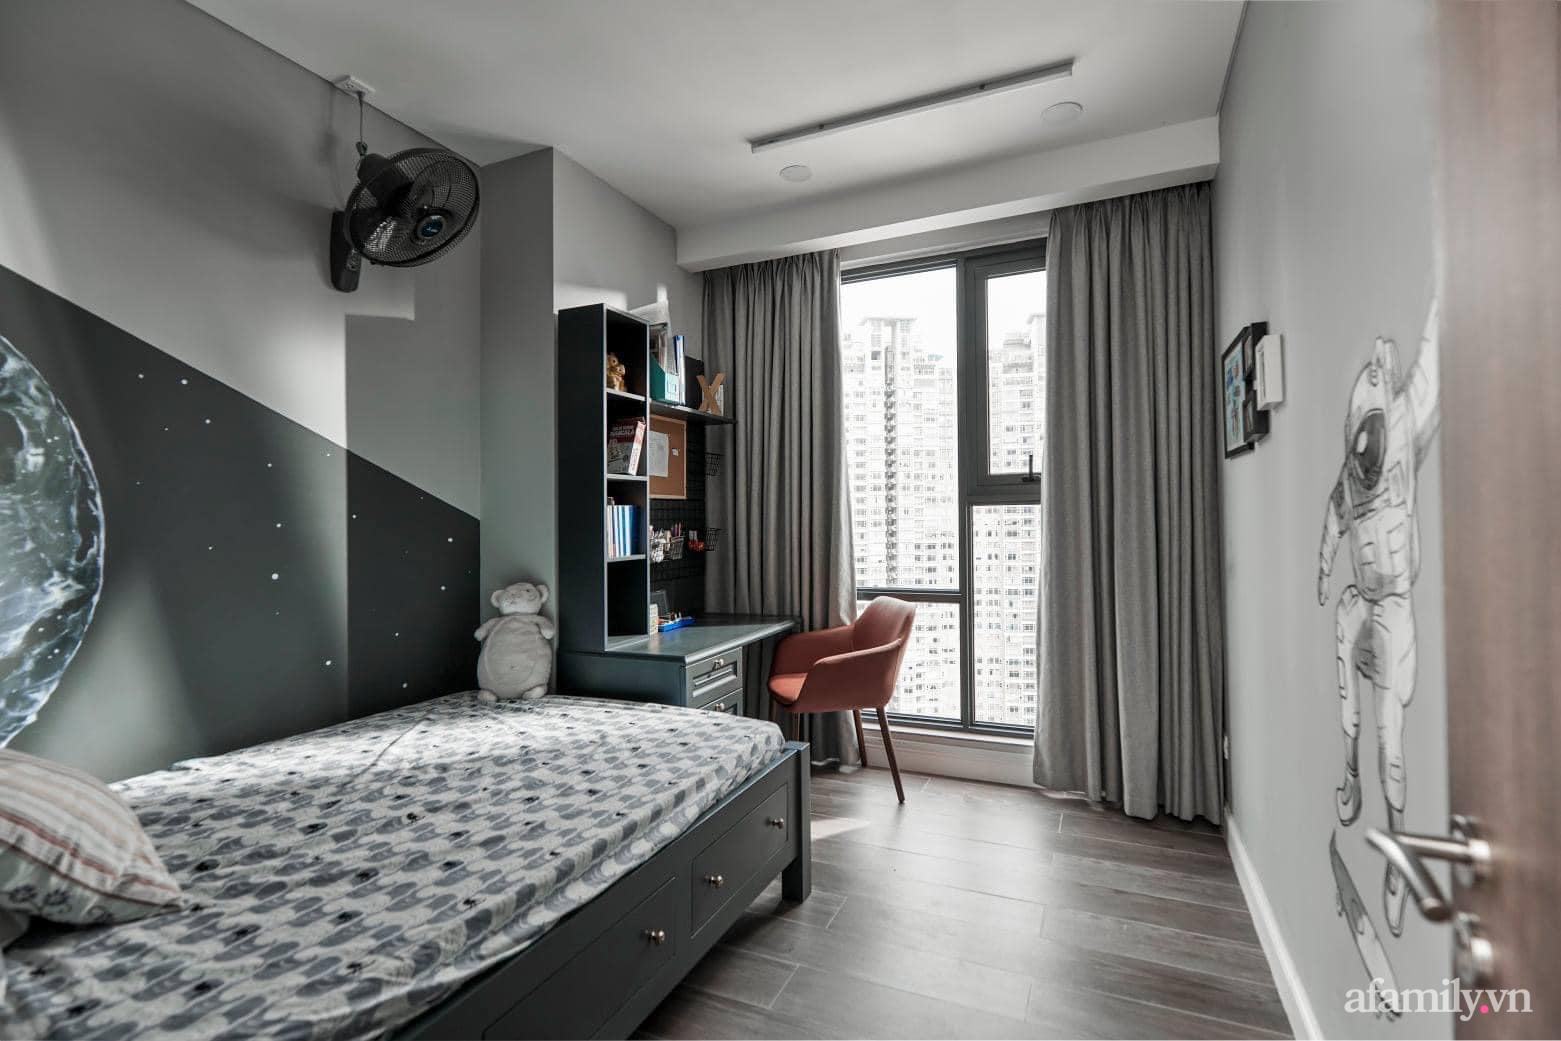 Vợ yêu phong cách Rustic, chồng kết nối hai căn hộ thành không gian sống rộng 180m² đẹp như mơ giữa lòng Sài Gòn - Ảnh 17.